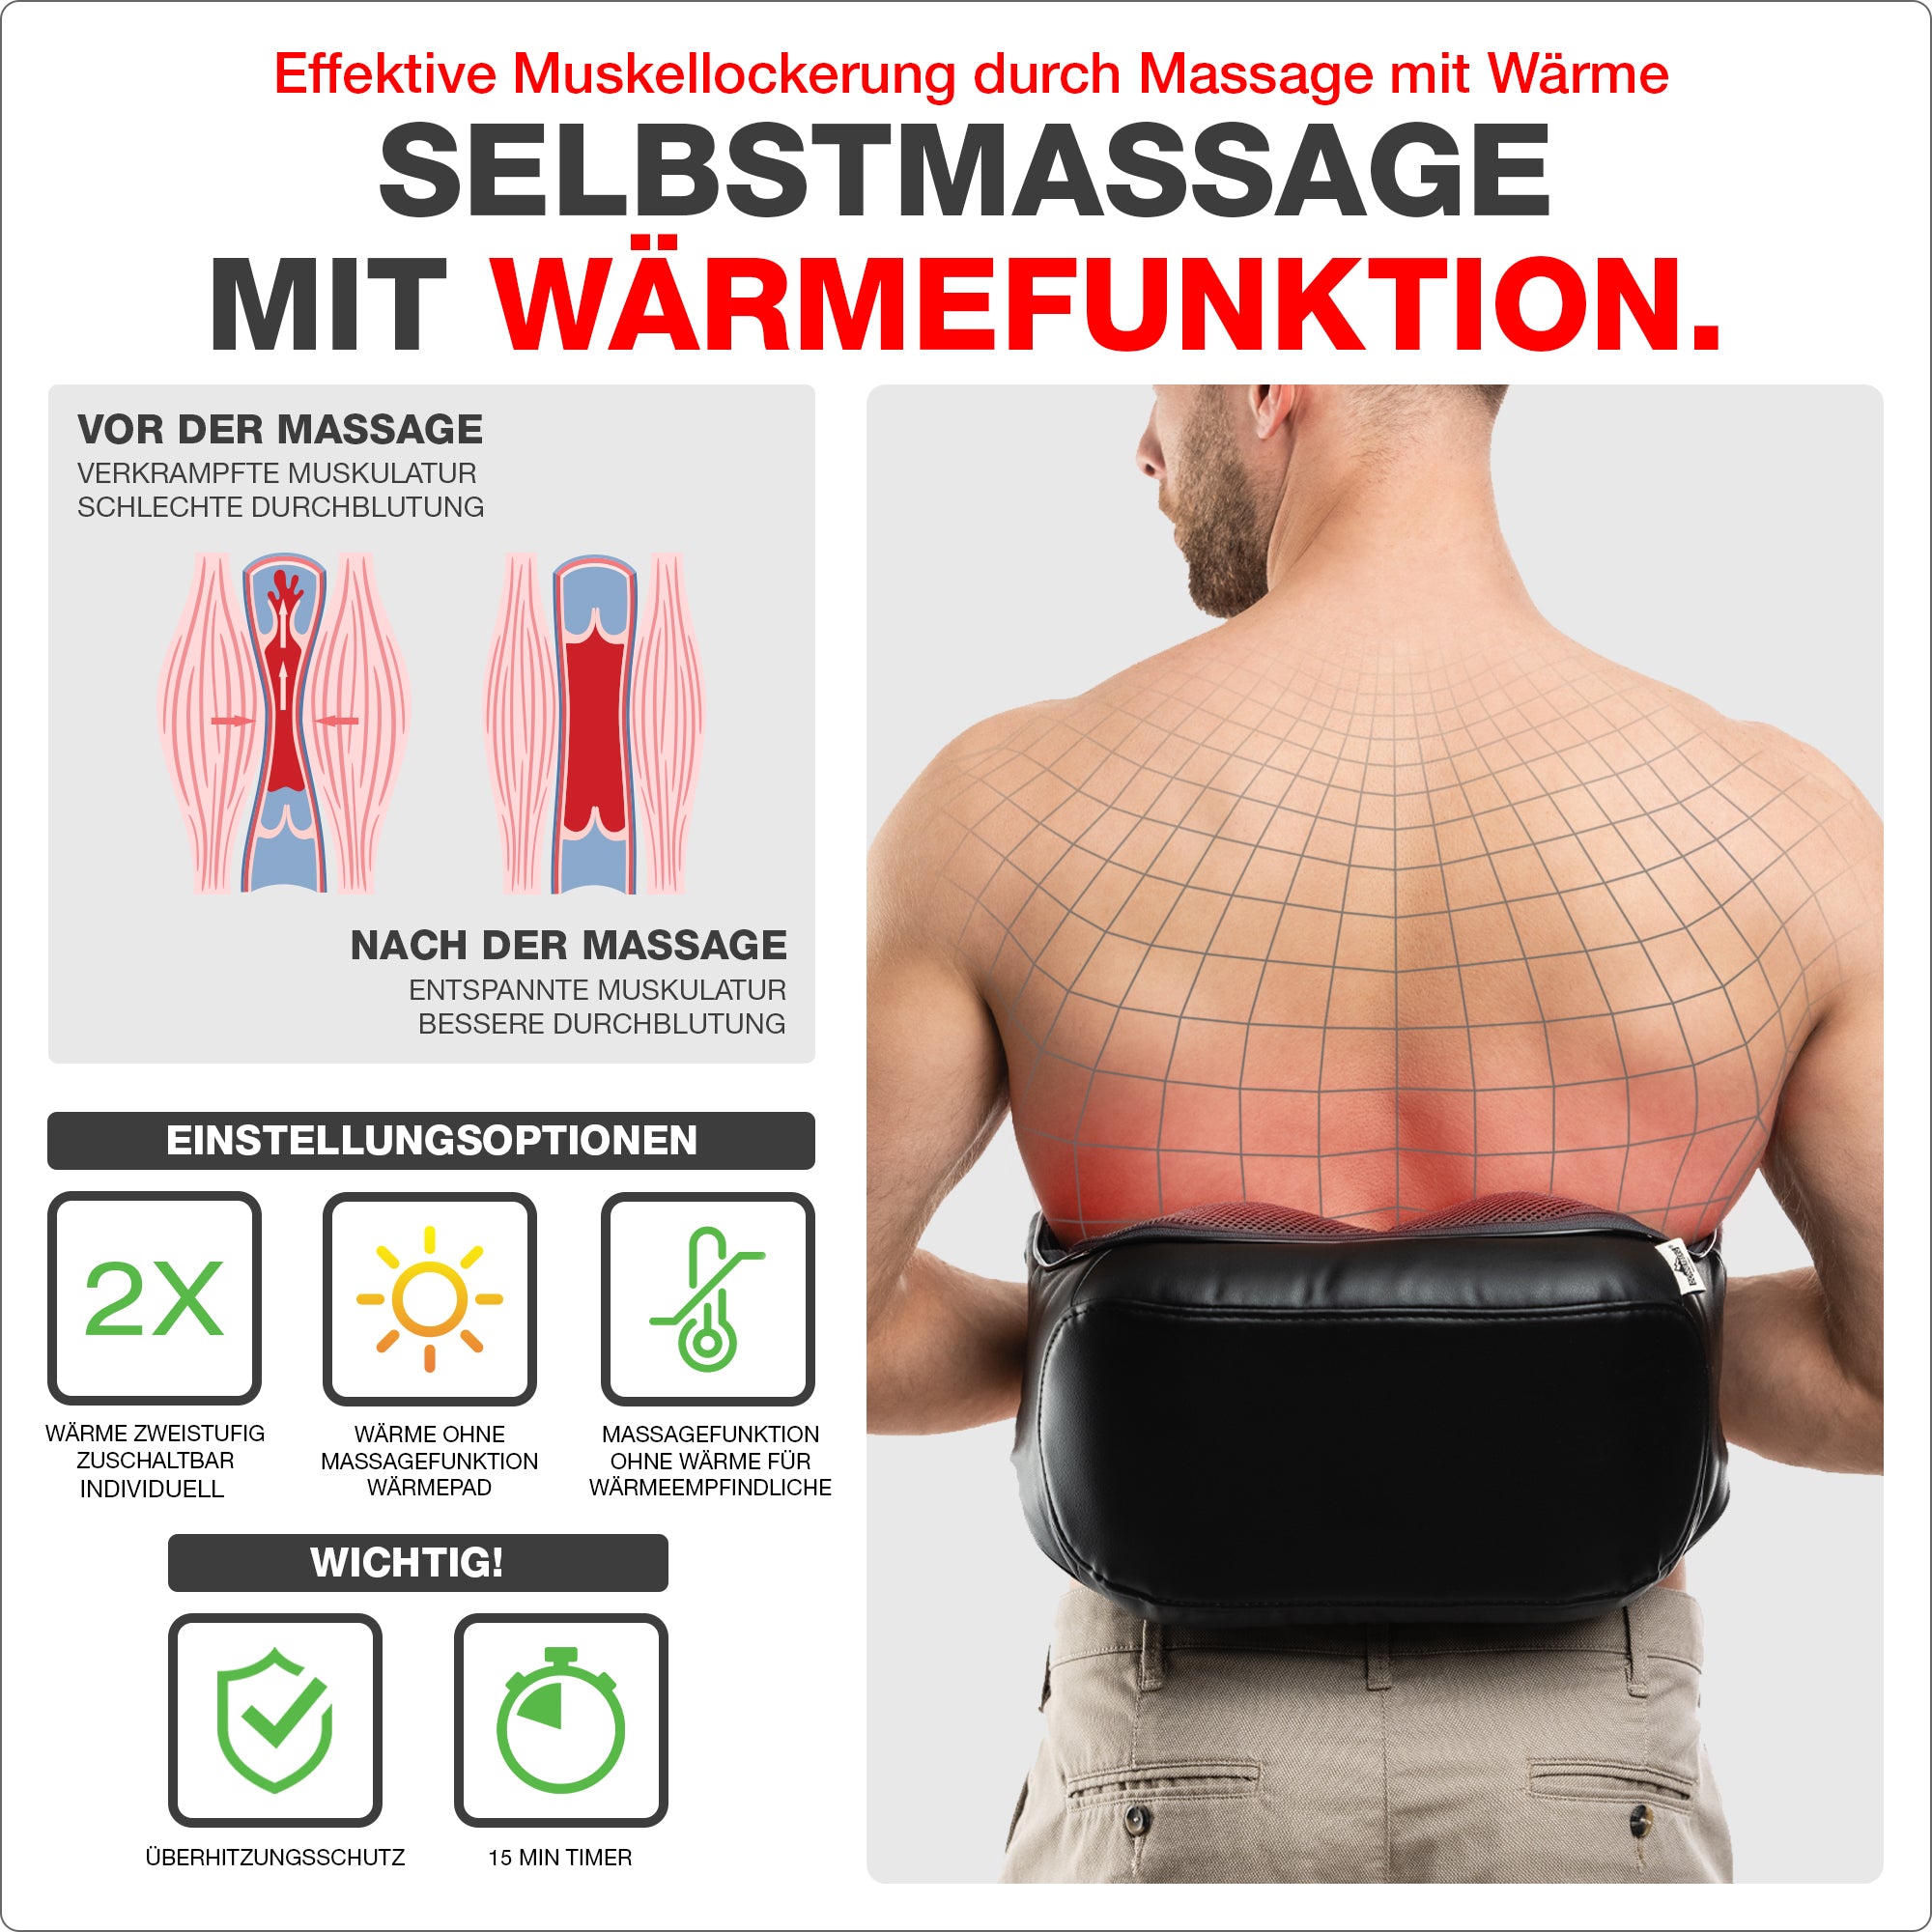 Selbstmassage mit Wärmefunktion. Zuschaltbare, zweistufige Infrarotwärme für effektive Muskellockerung